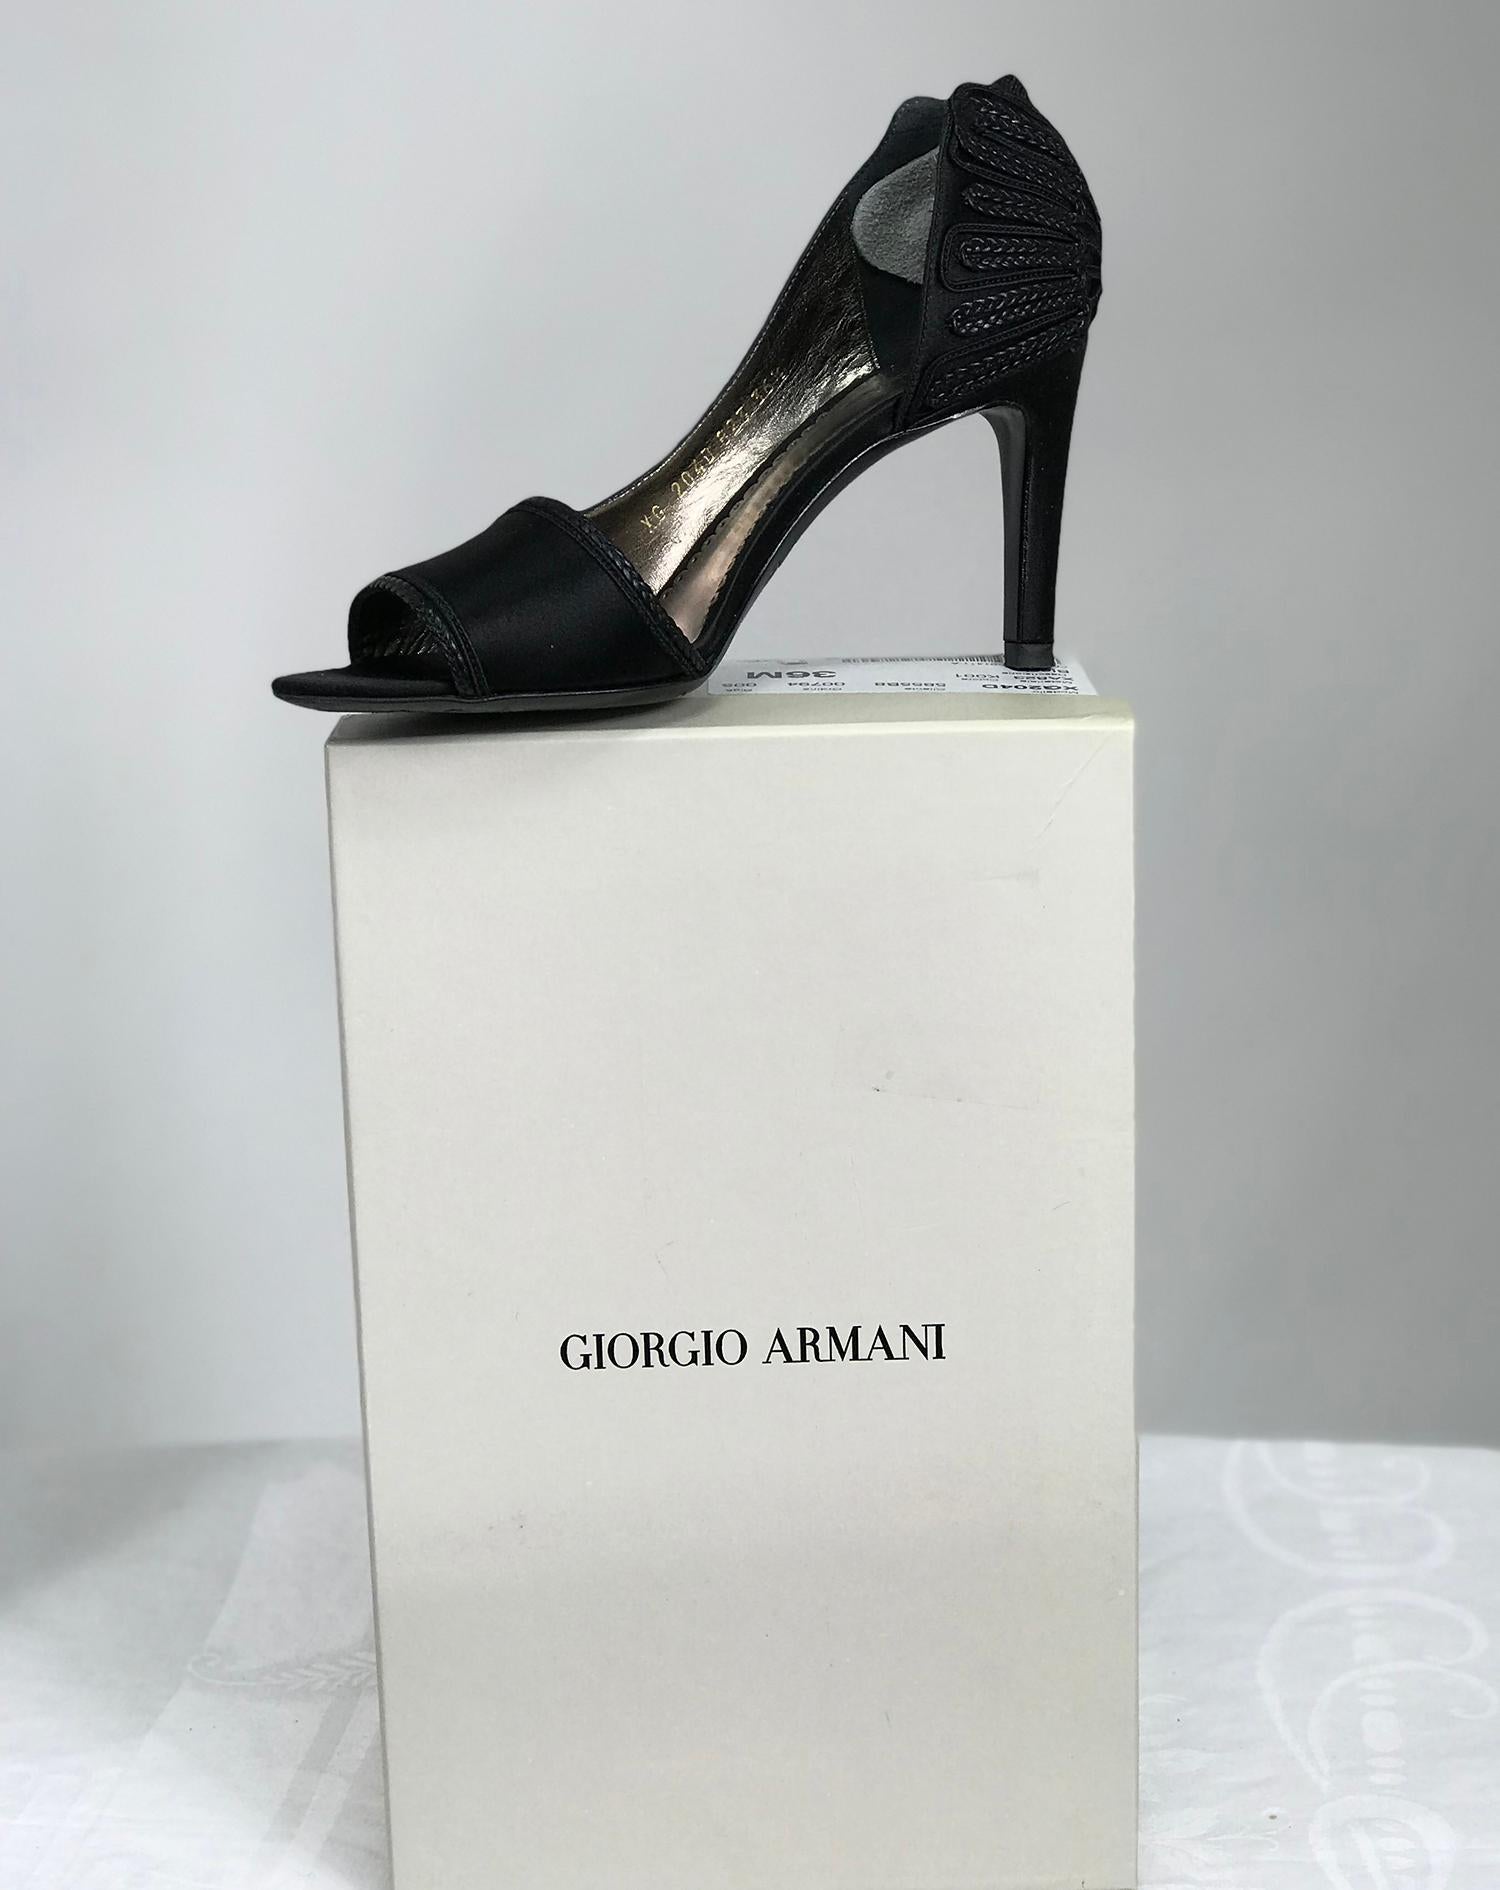 Escarpins à talon haut Giorgio Armani noir saitn d'orsay avec détail de passementerie à l'arrière du talon, 36 M.  talons de 3 1/2 pouces. Ces magnifiques chaussures sont garnies d'une étroite bande de tresse à l'avant et l'arrière est appliqué